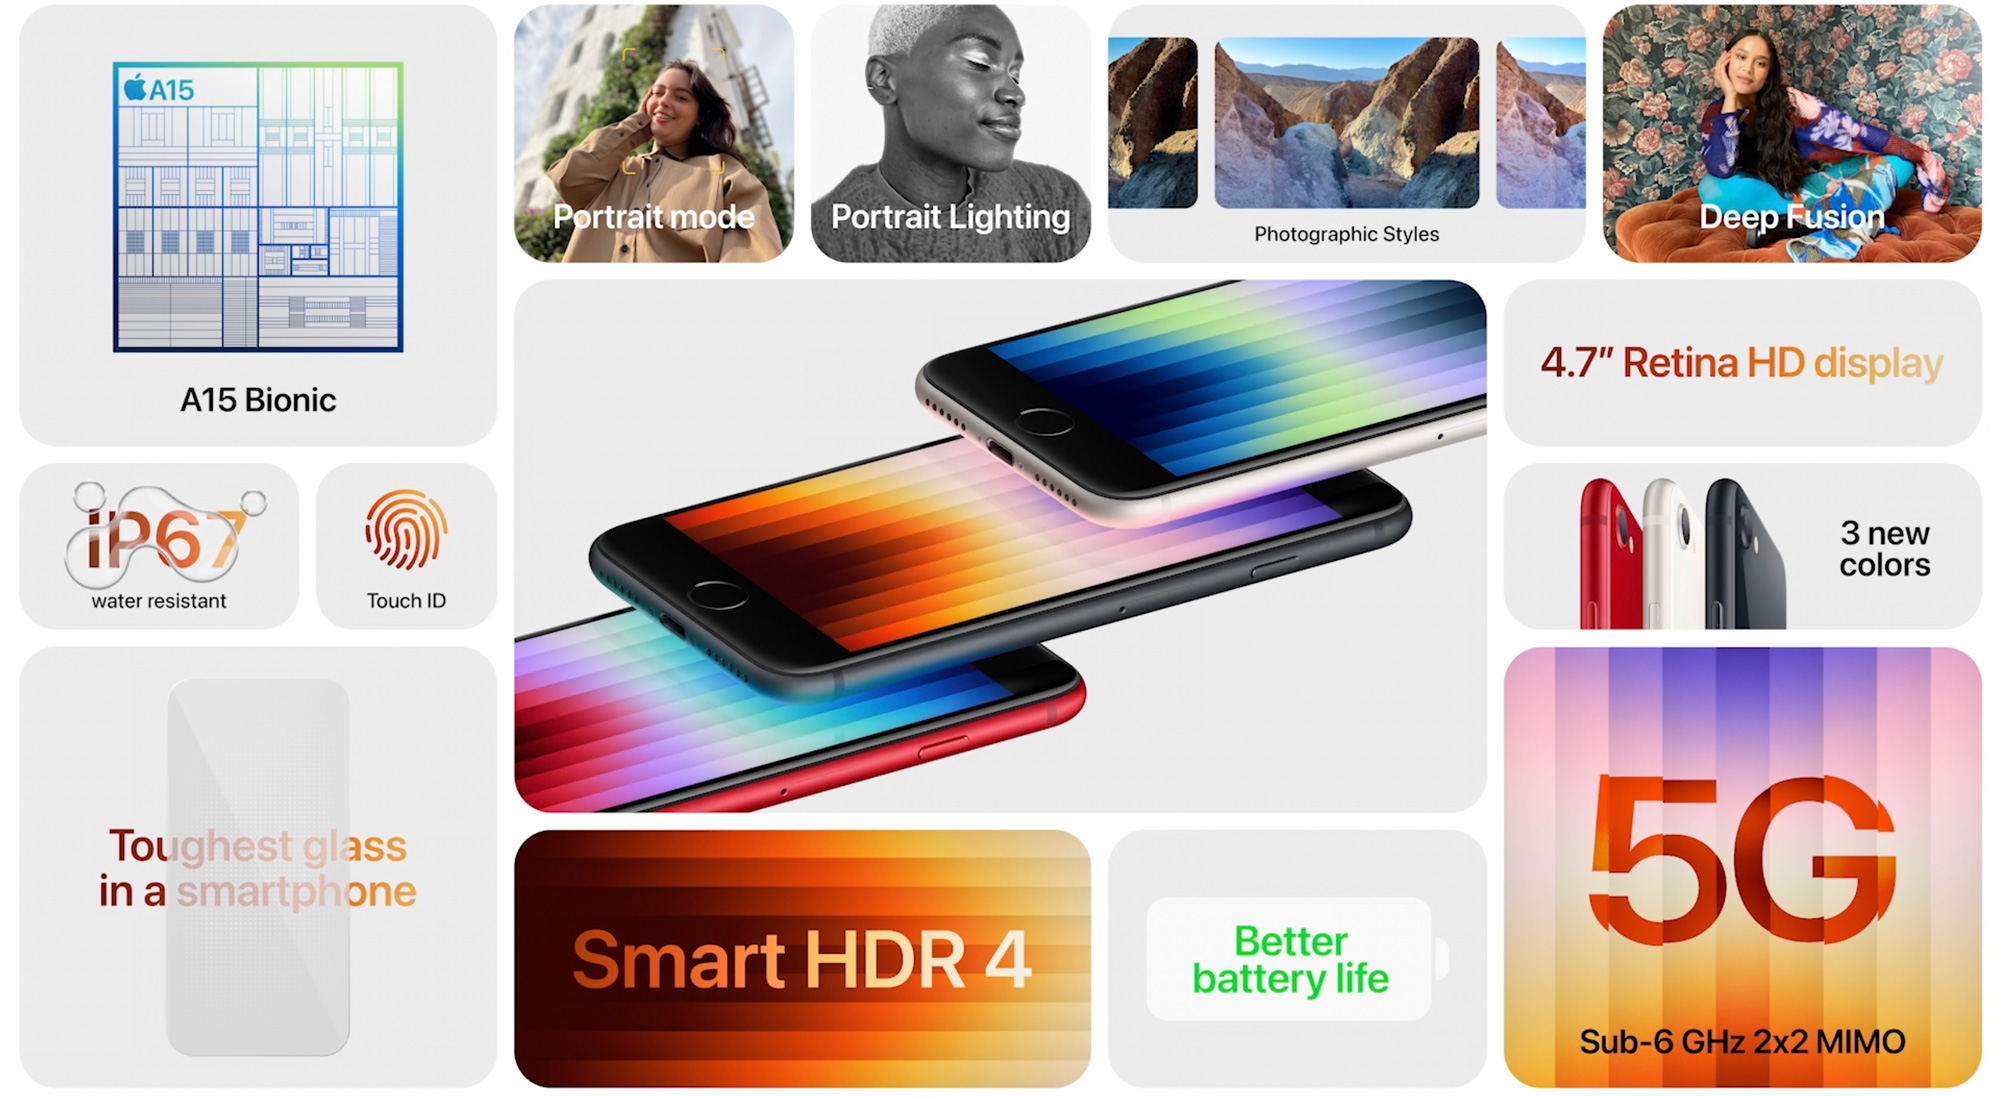 iPhone SE 2022 trang bị chip A15 Bionic, hỗ trợ 5G, giá từ 429 USD, đặt hàng trước từ ngày 11/3